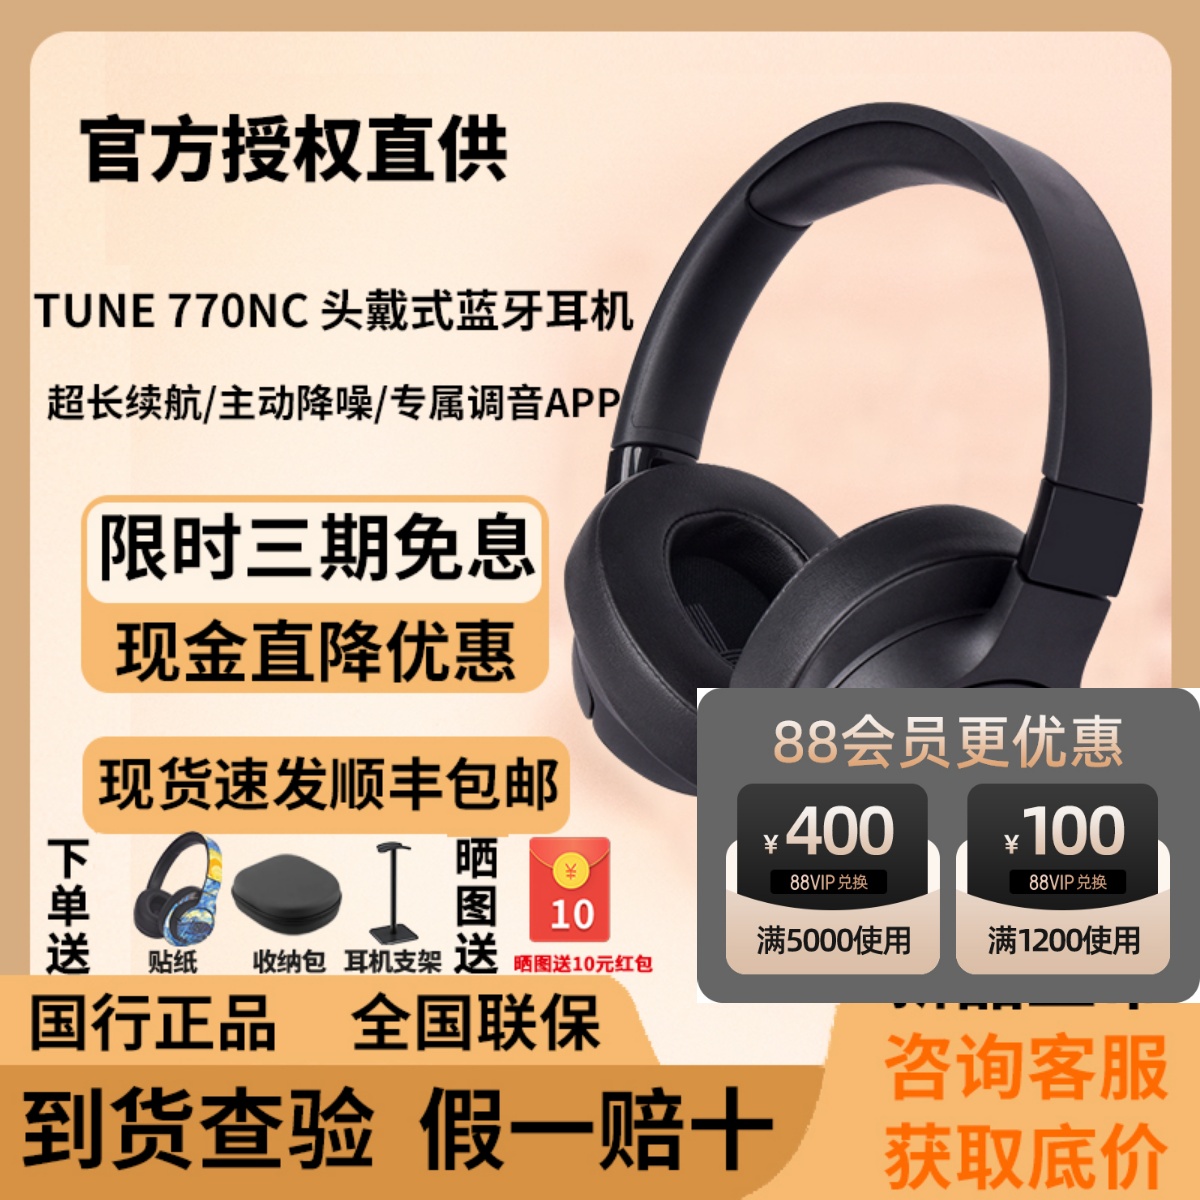 JBL T770NC 头戴式无线蓝牙耳机主动智能降噪带麦游戏耳机大耳罩 影音电器 游戏电竞头戴耳机 原图主图